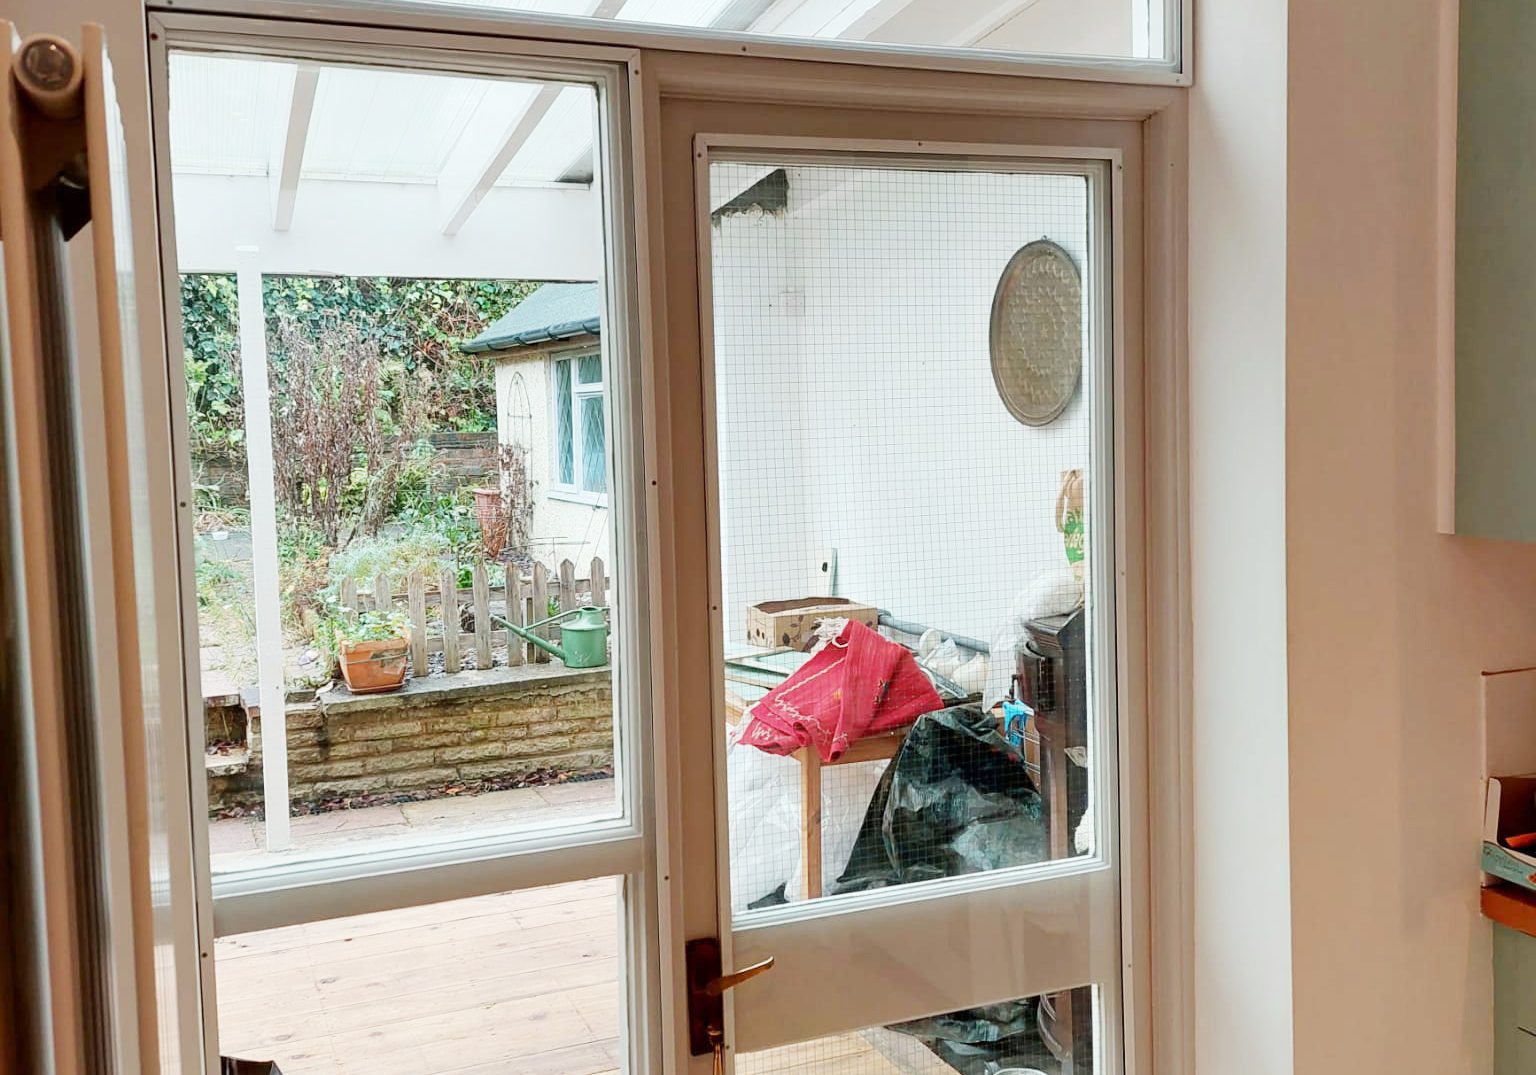 secondary glazing ground floor bay window and kitchen door area 7